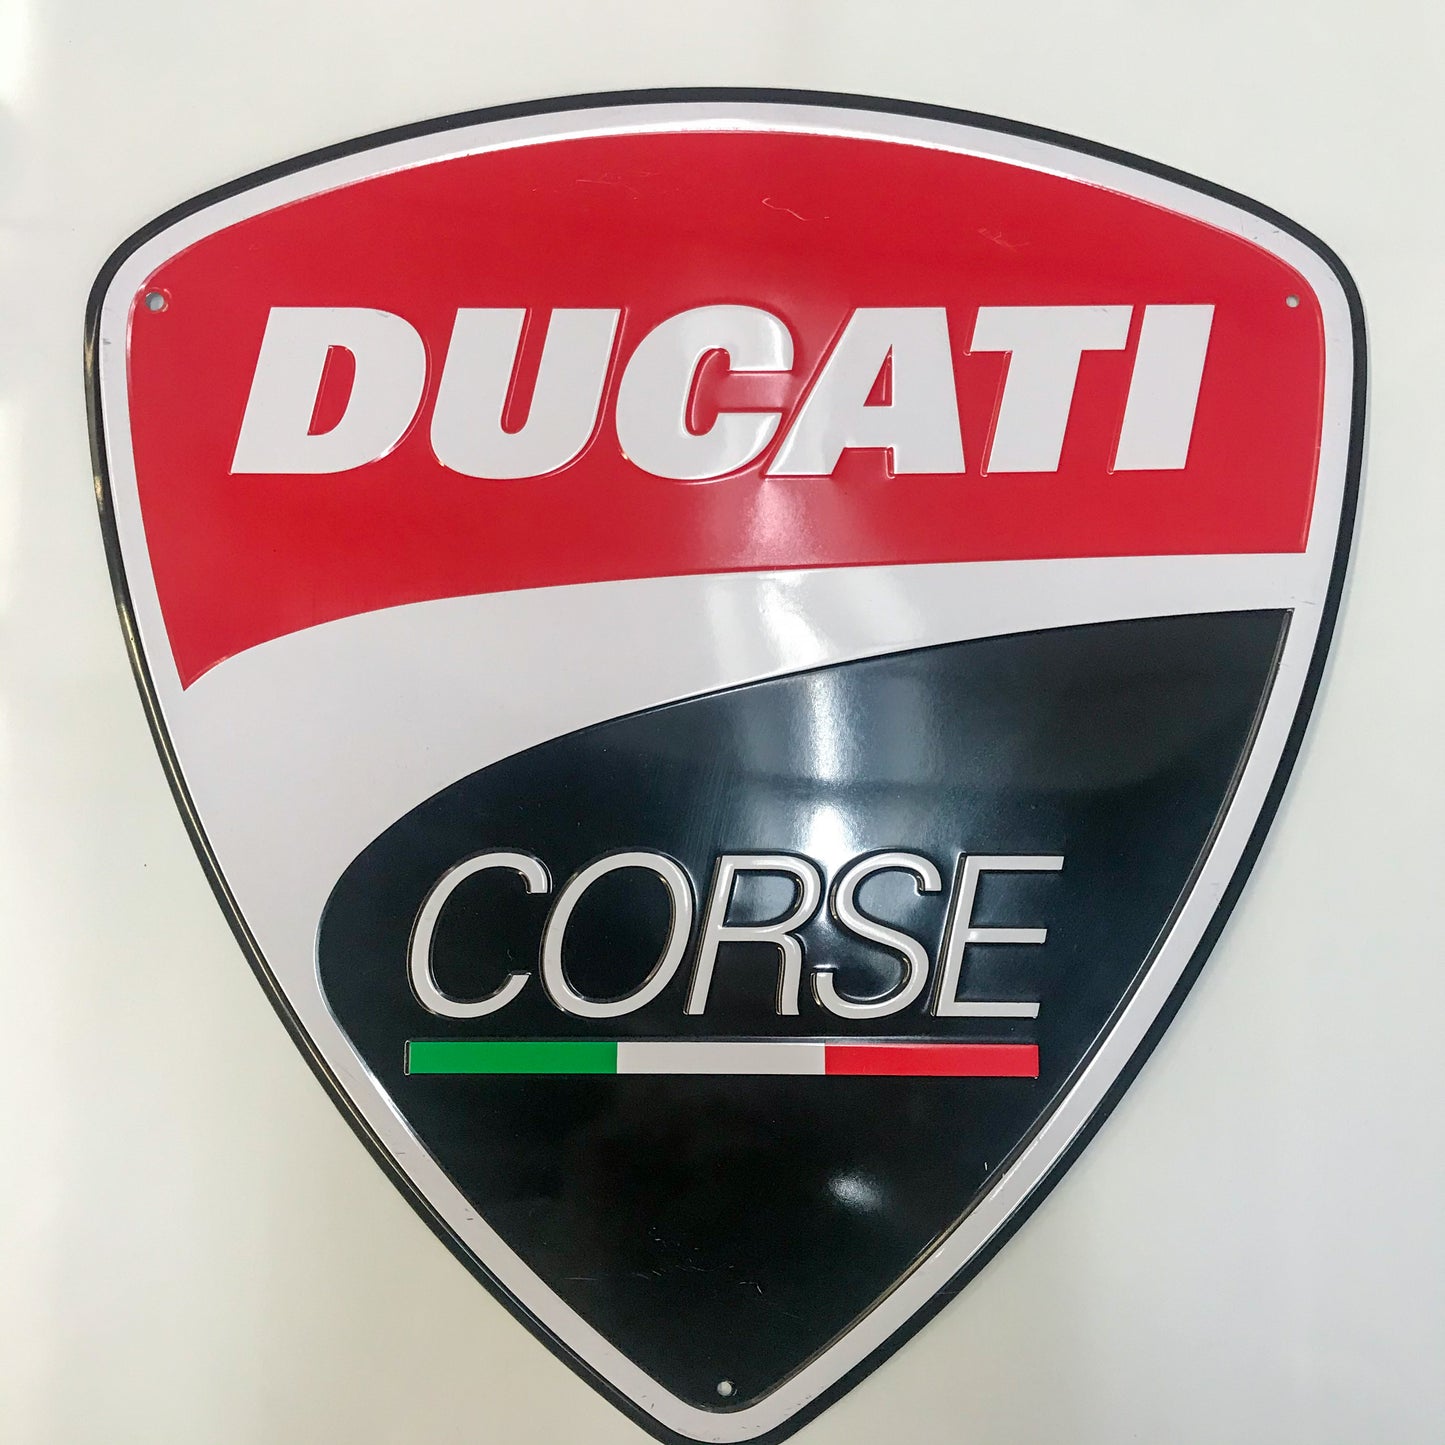 Ducati Corse Wall Sign- Display 987691016